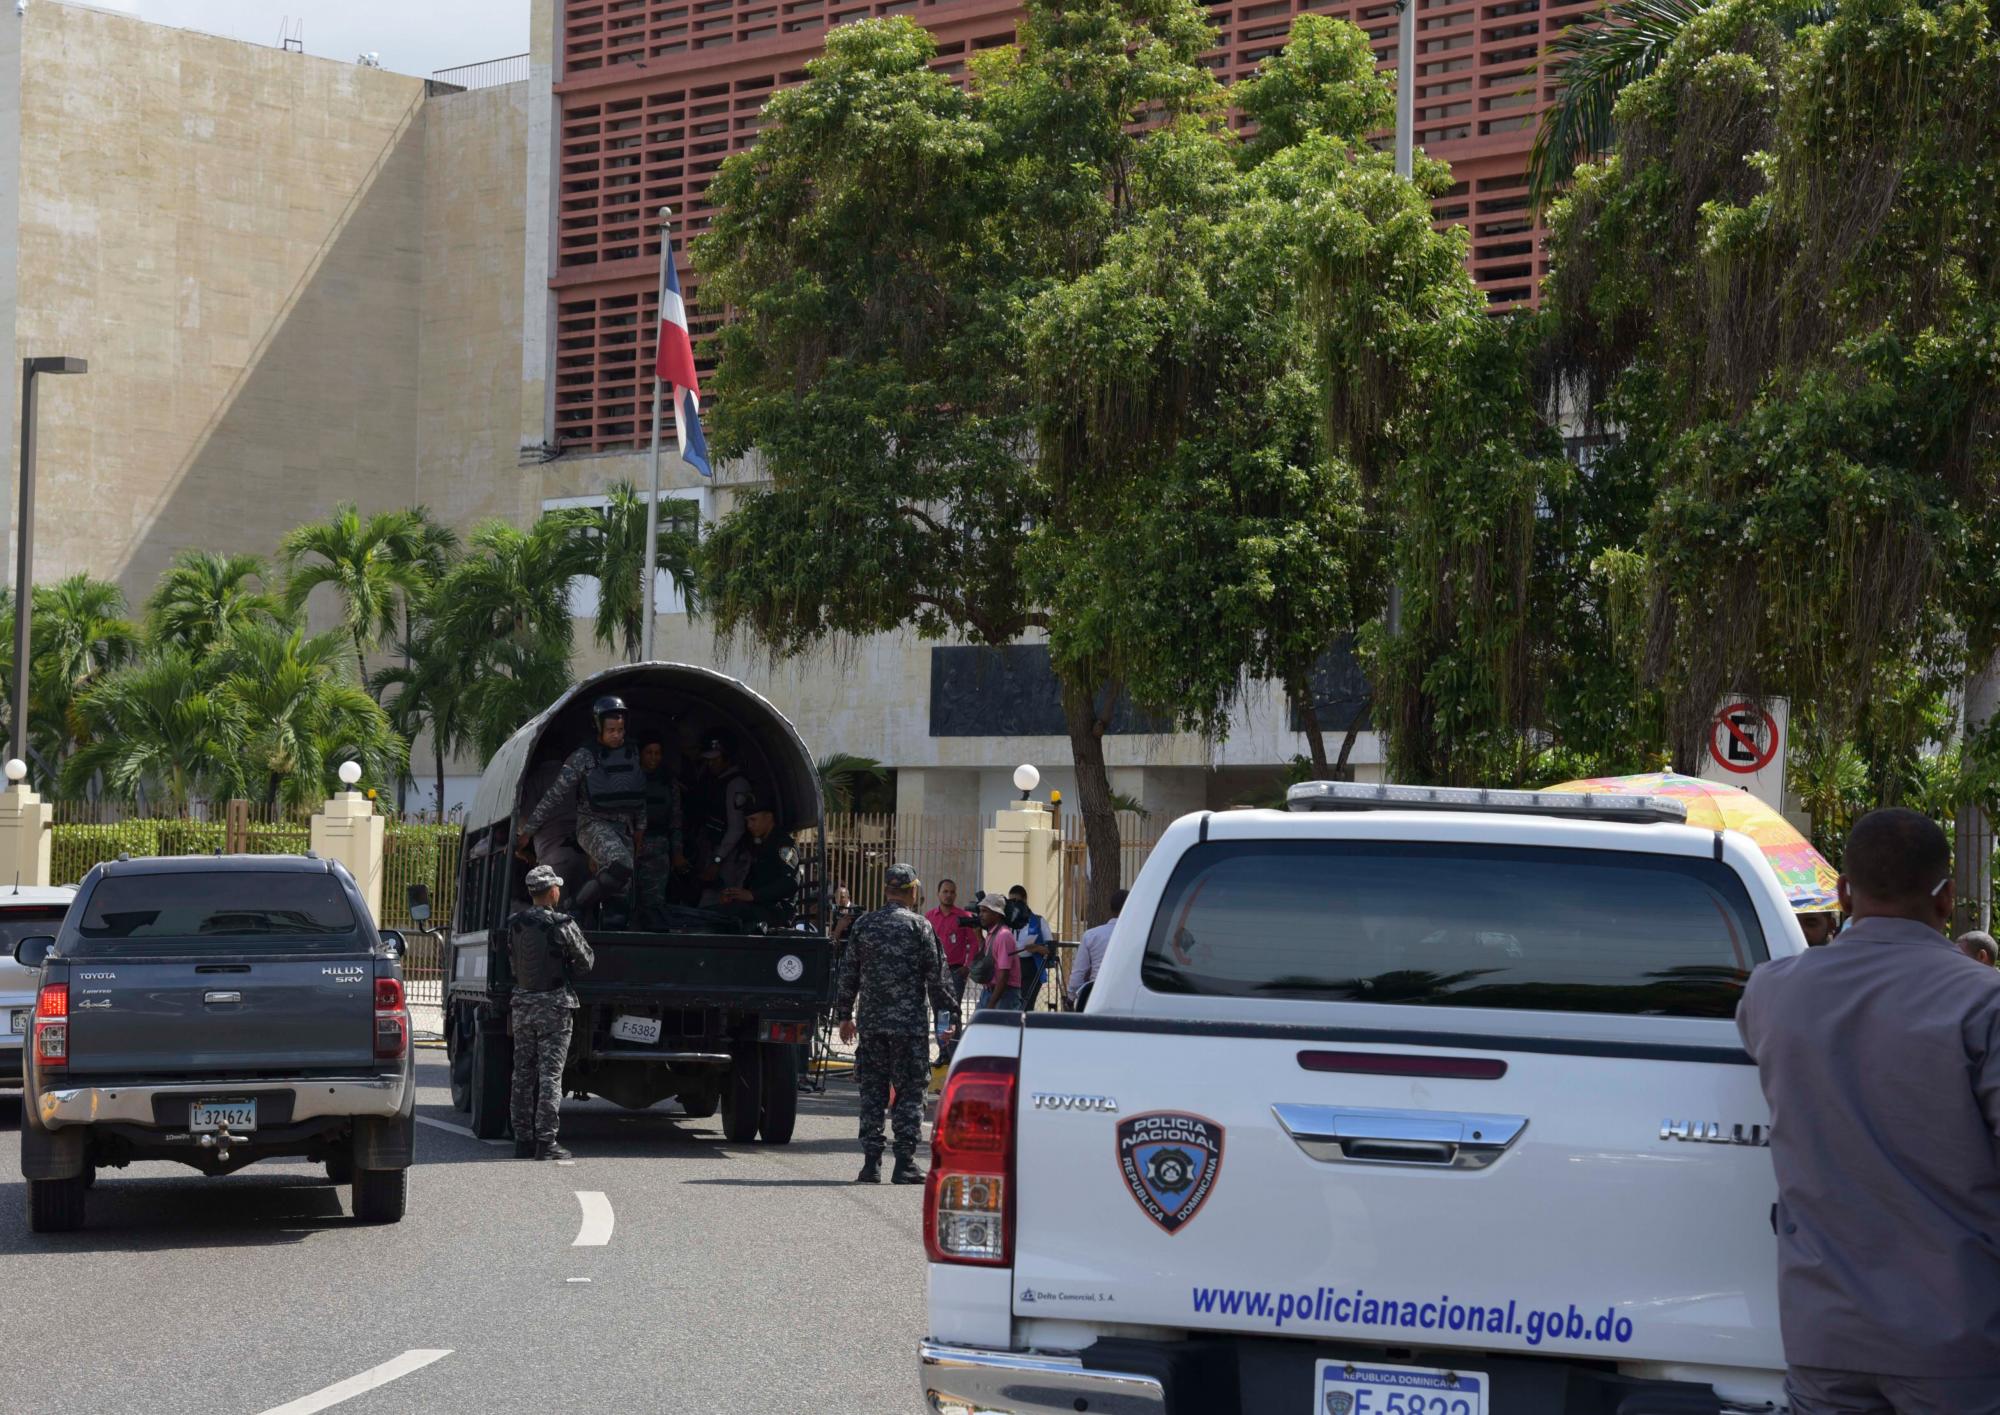 Se observa una camioneta de la policía nacional estacionada a pocos metros de la entrada al edificio del Congreso Nacional.